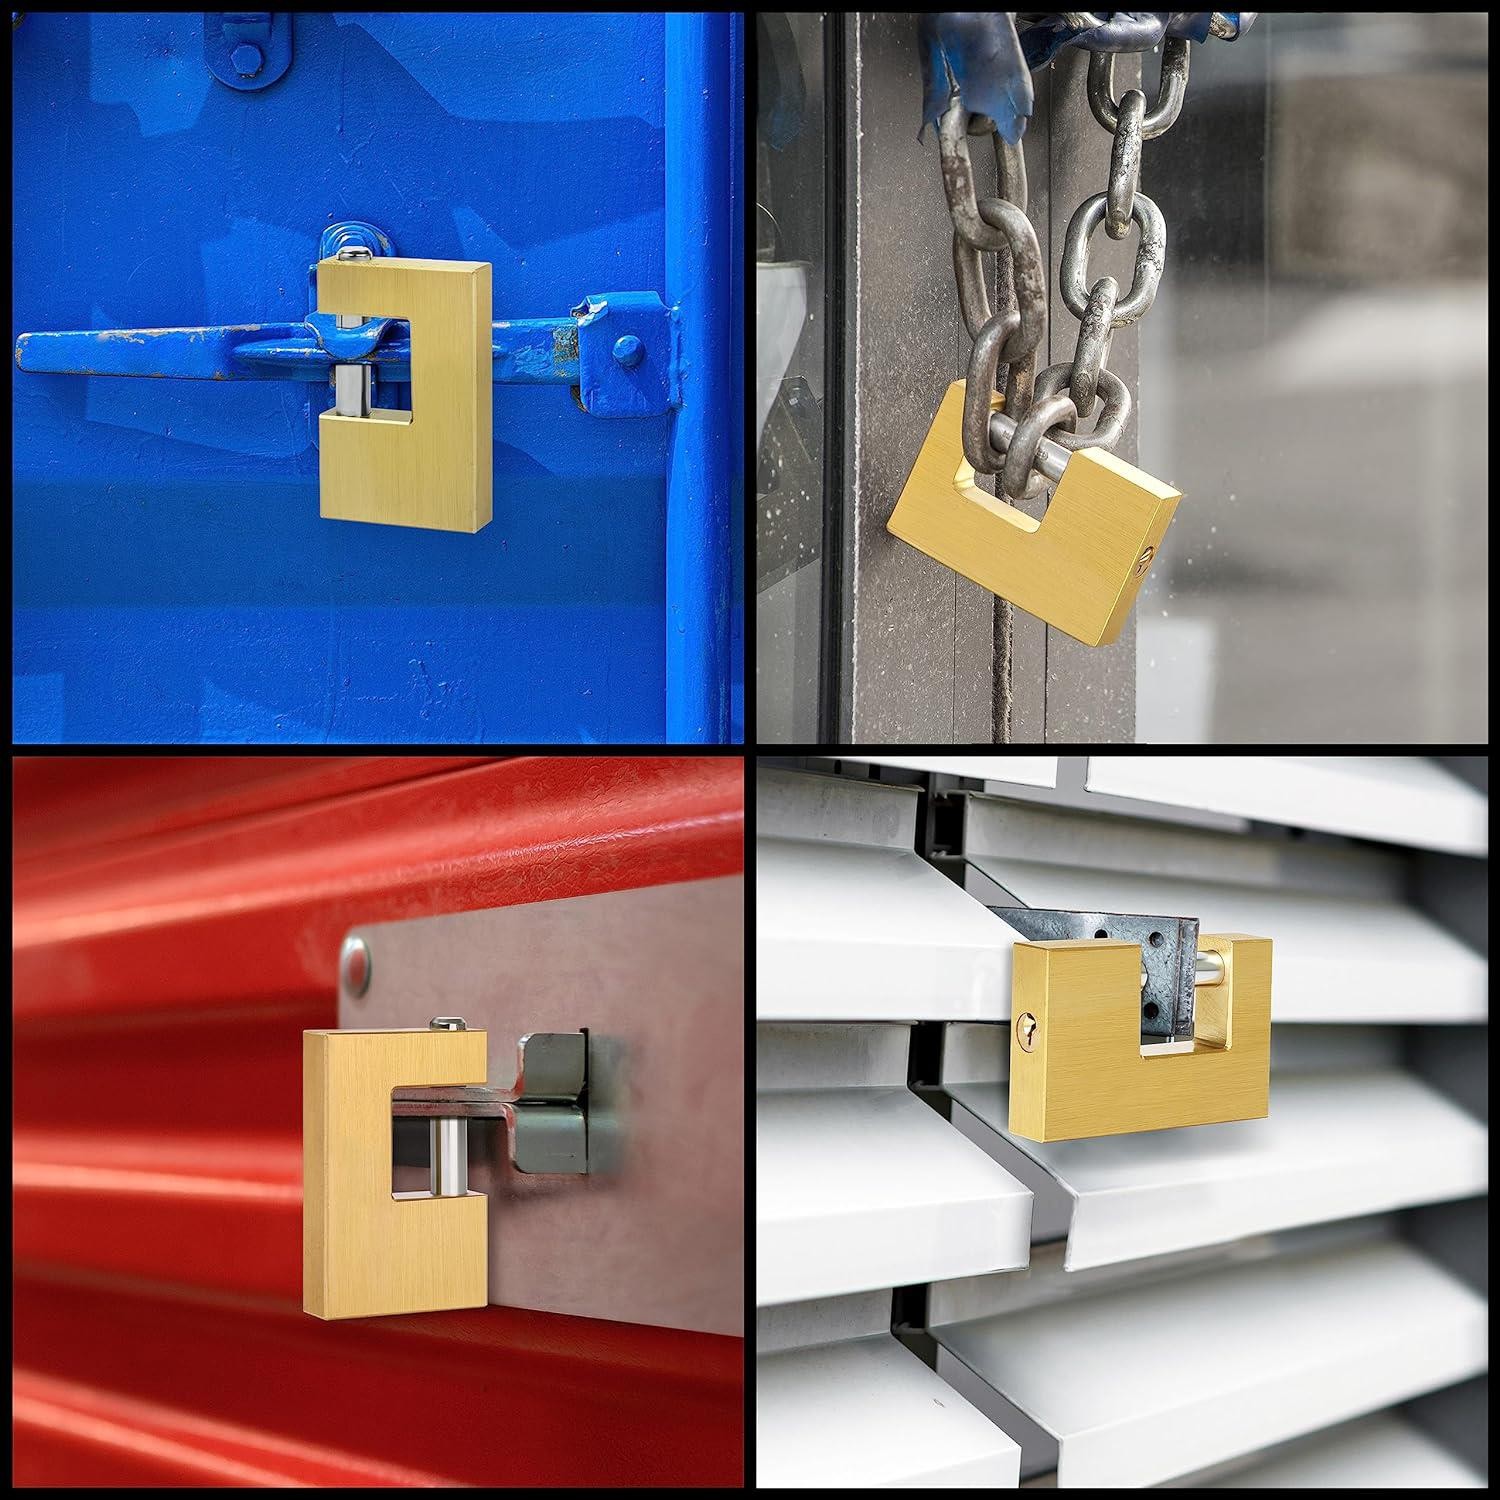 Kepenk İşyeri Kapısı Kilidi Yassı Çelik Kayar Milli Asma Kilit Kapı Emniyet 80 mm 3 Anahtarlı Metal